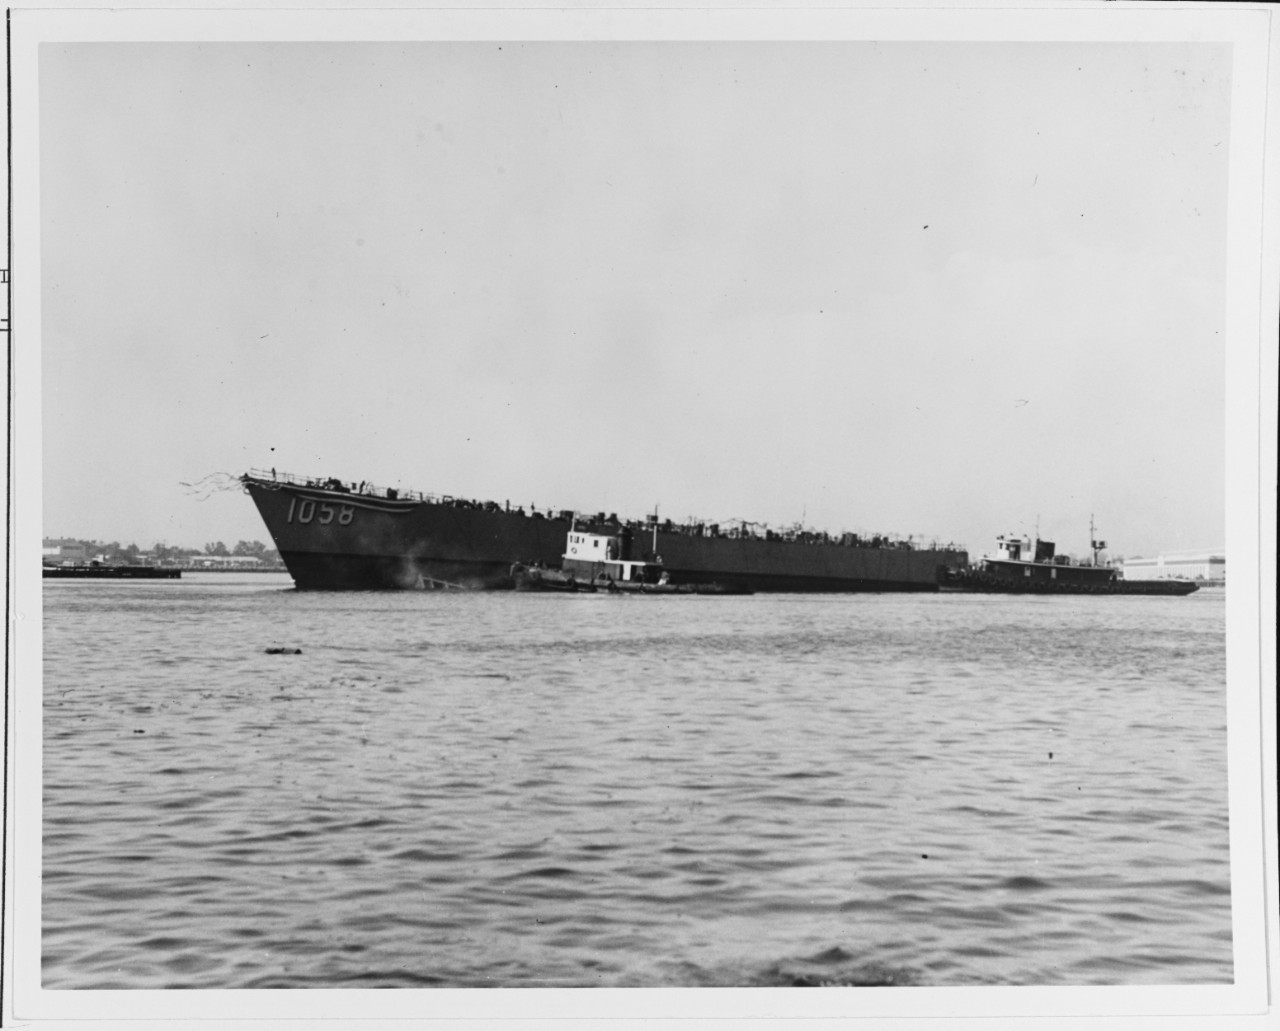 The USS MEYERKORD (DE-1058)